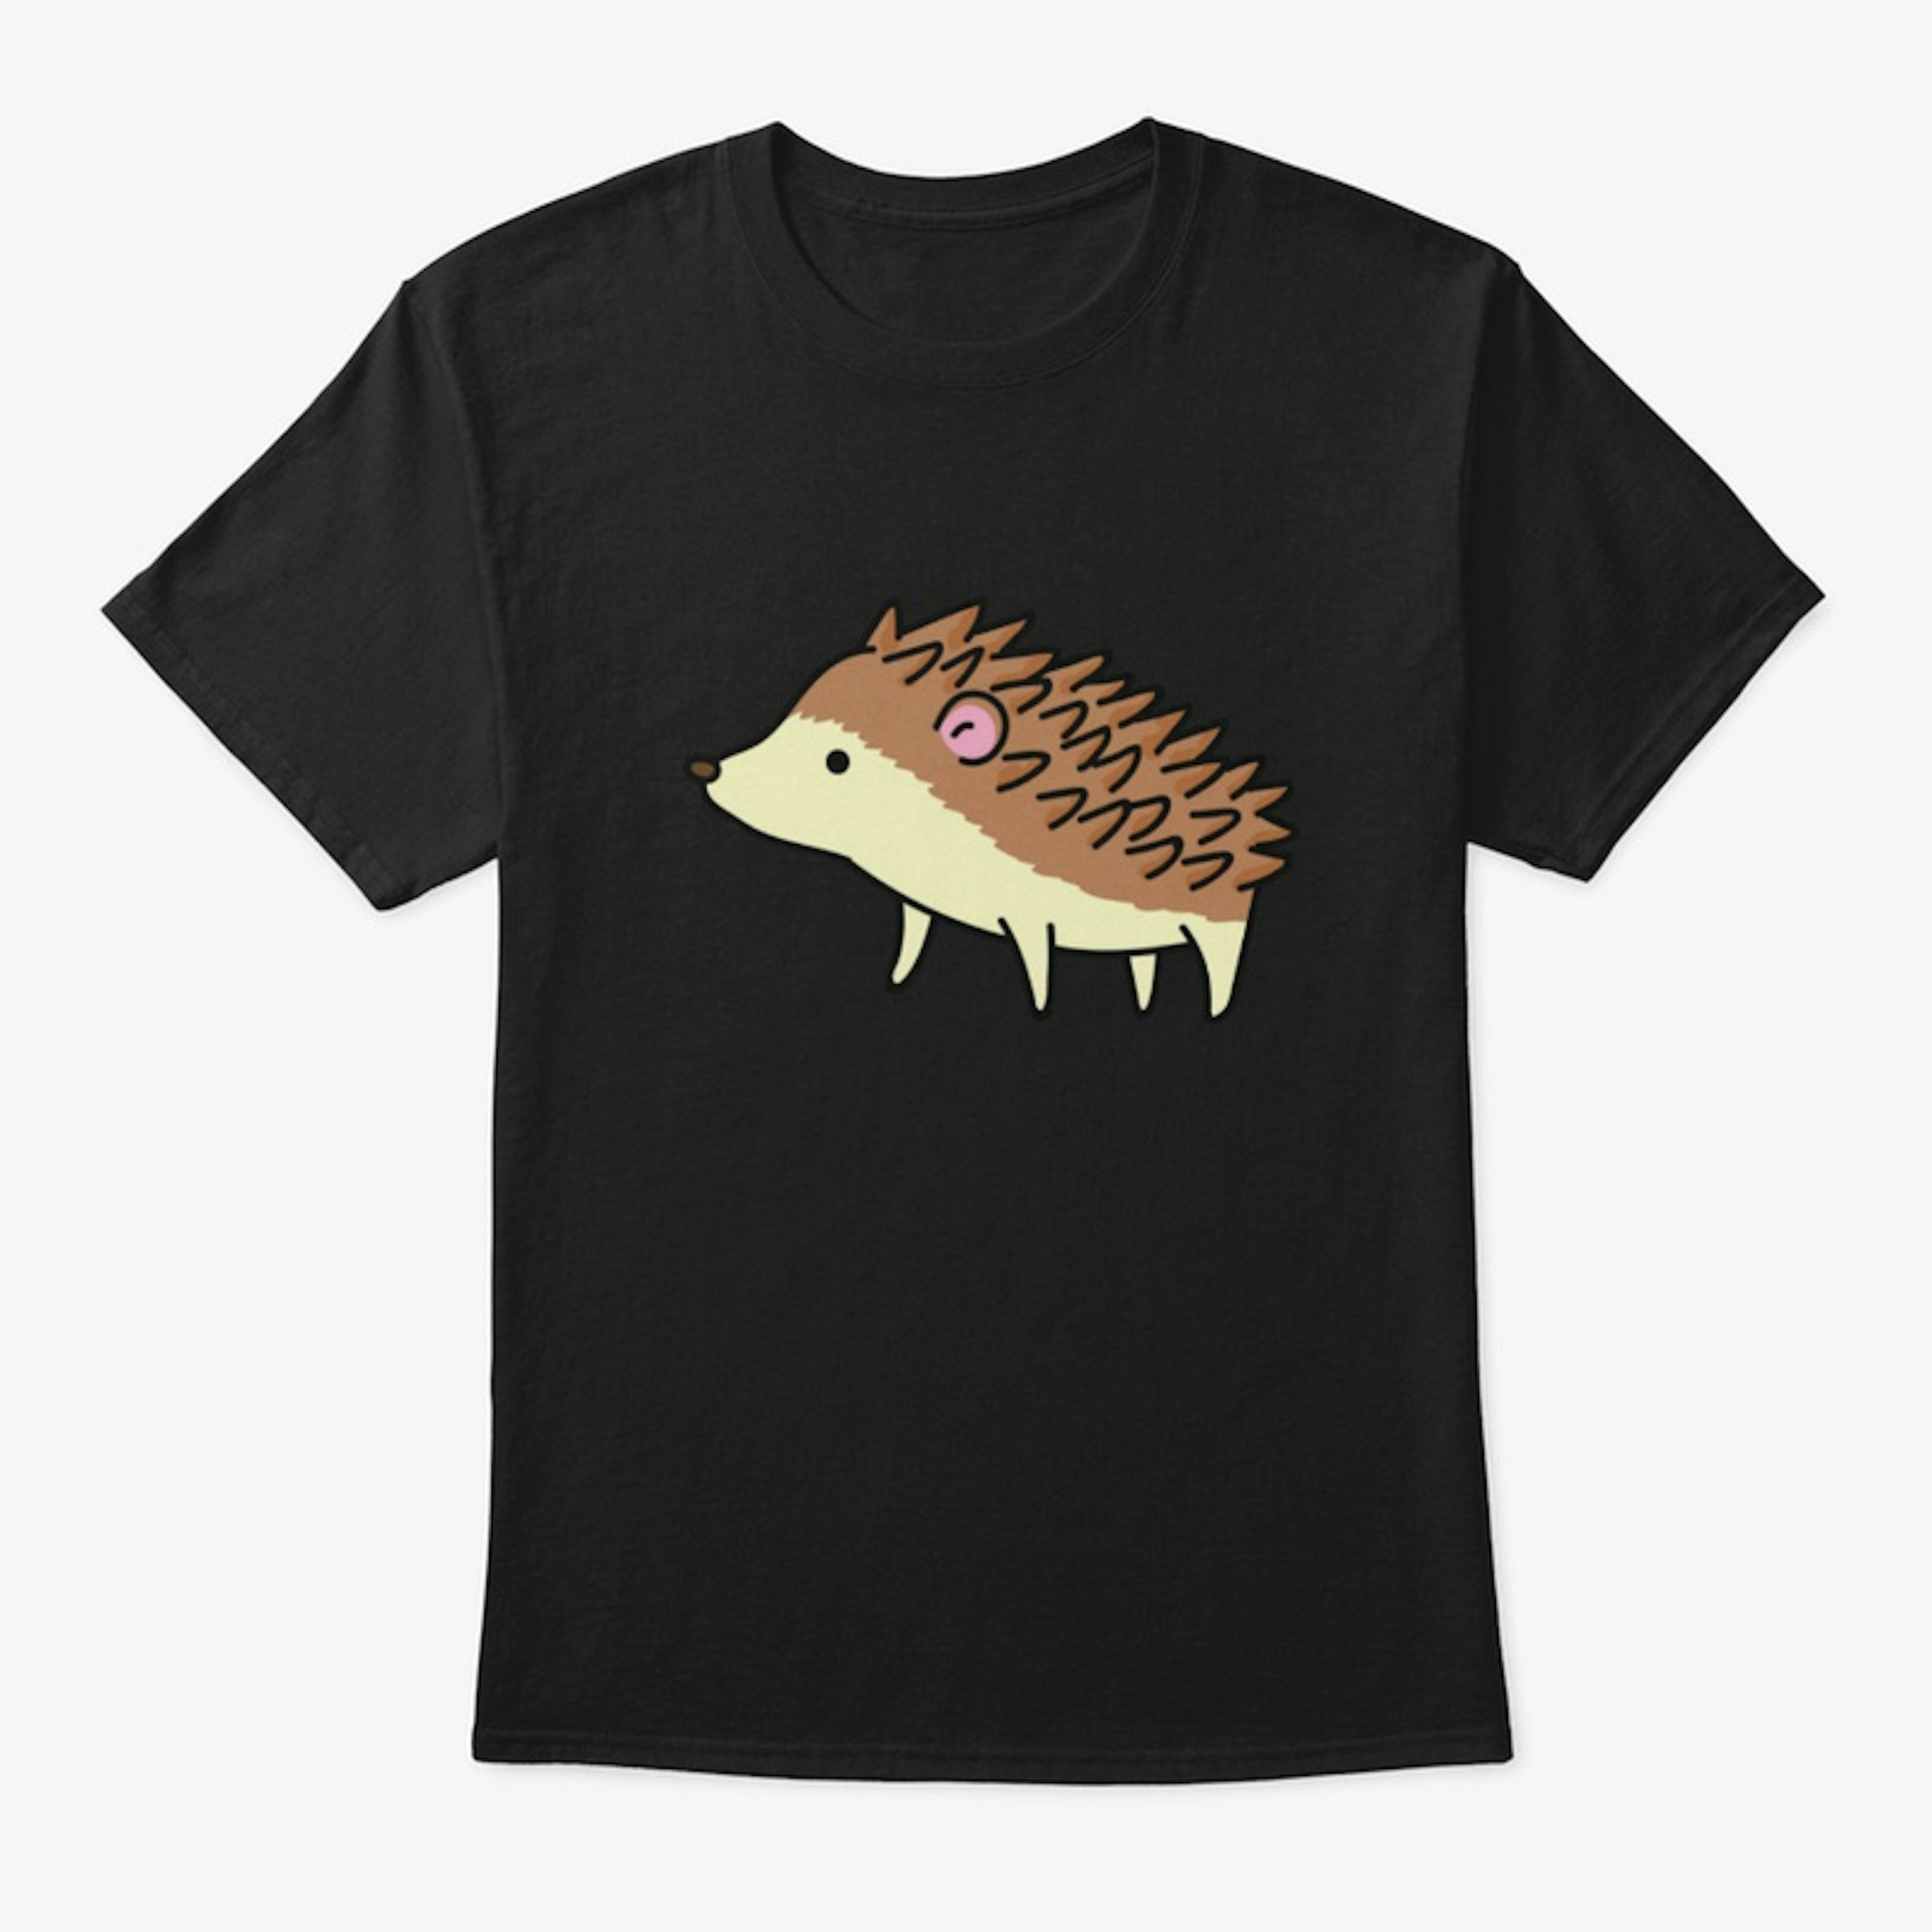 Cute Little Hedgehog Art Design